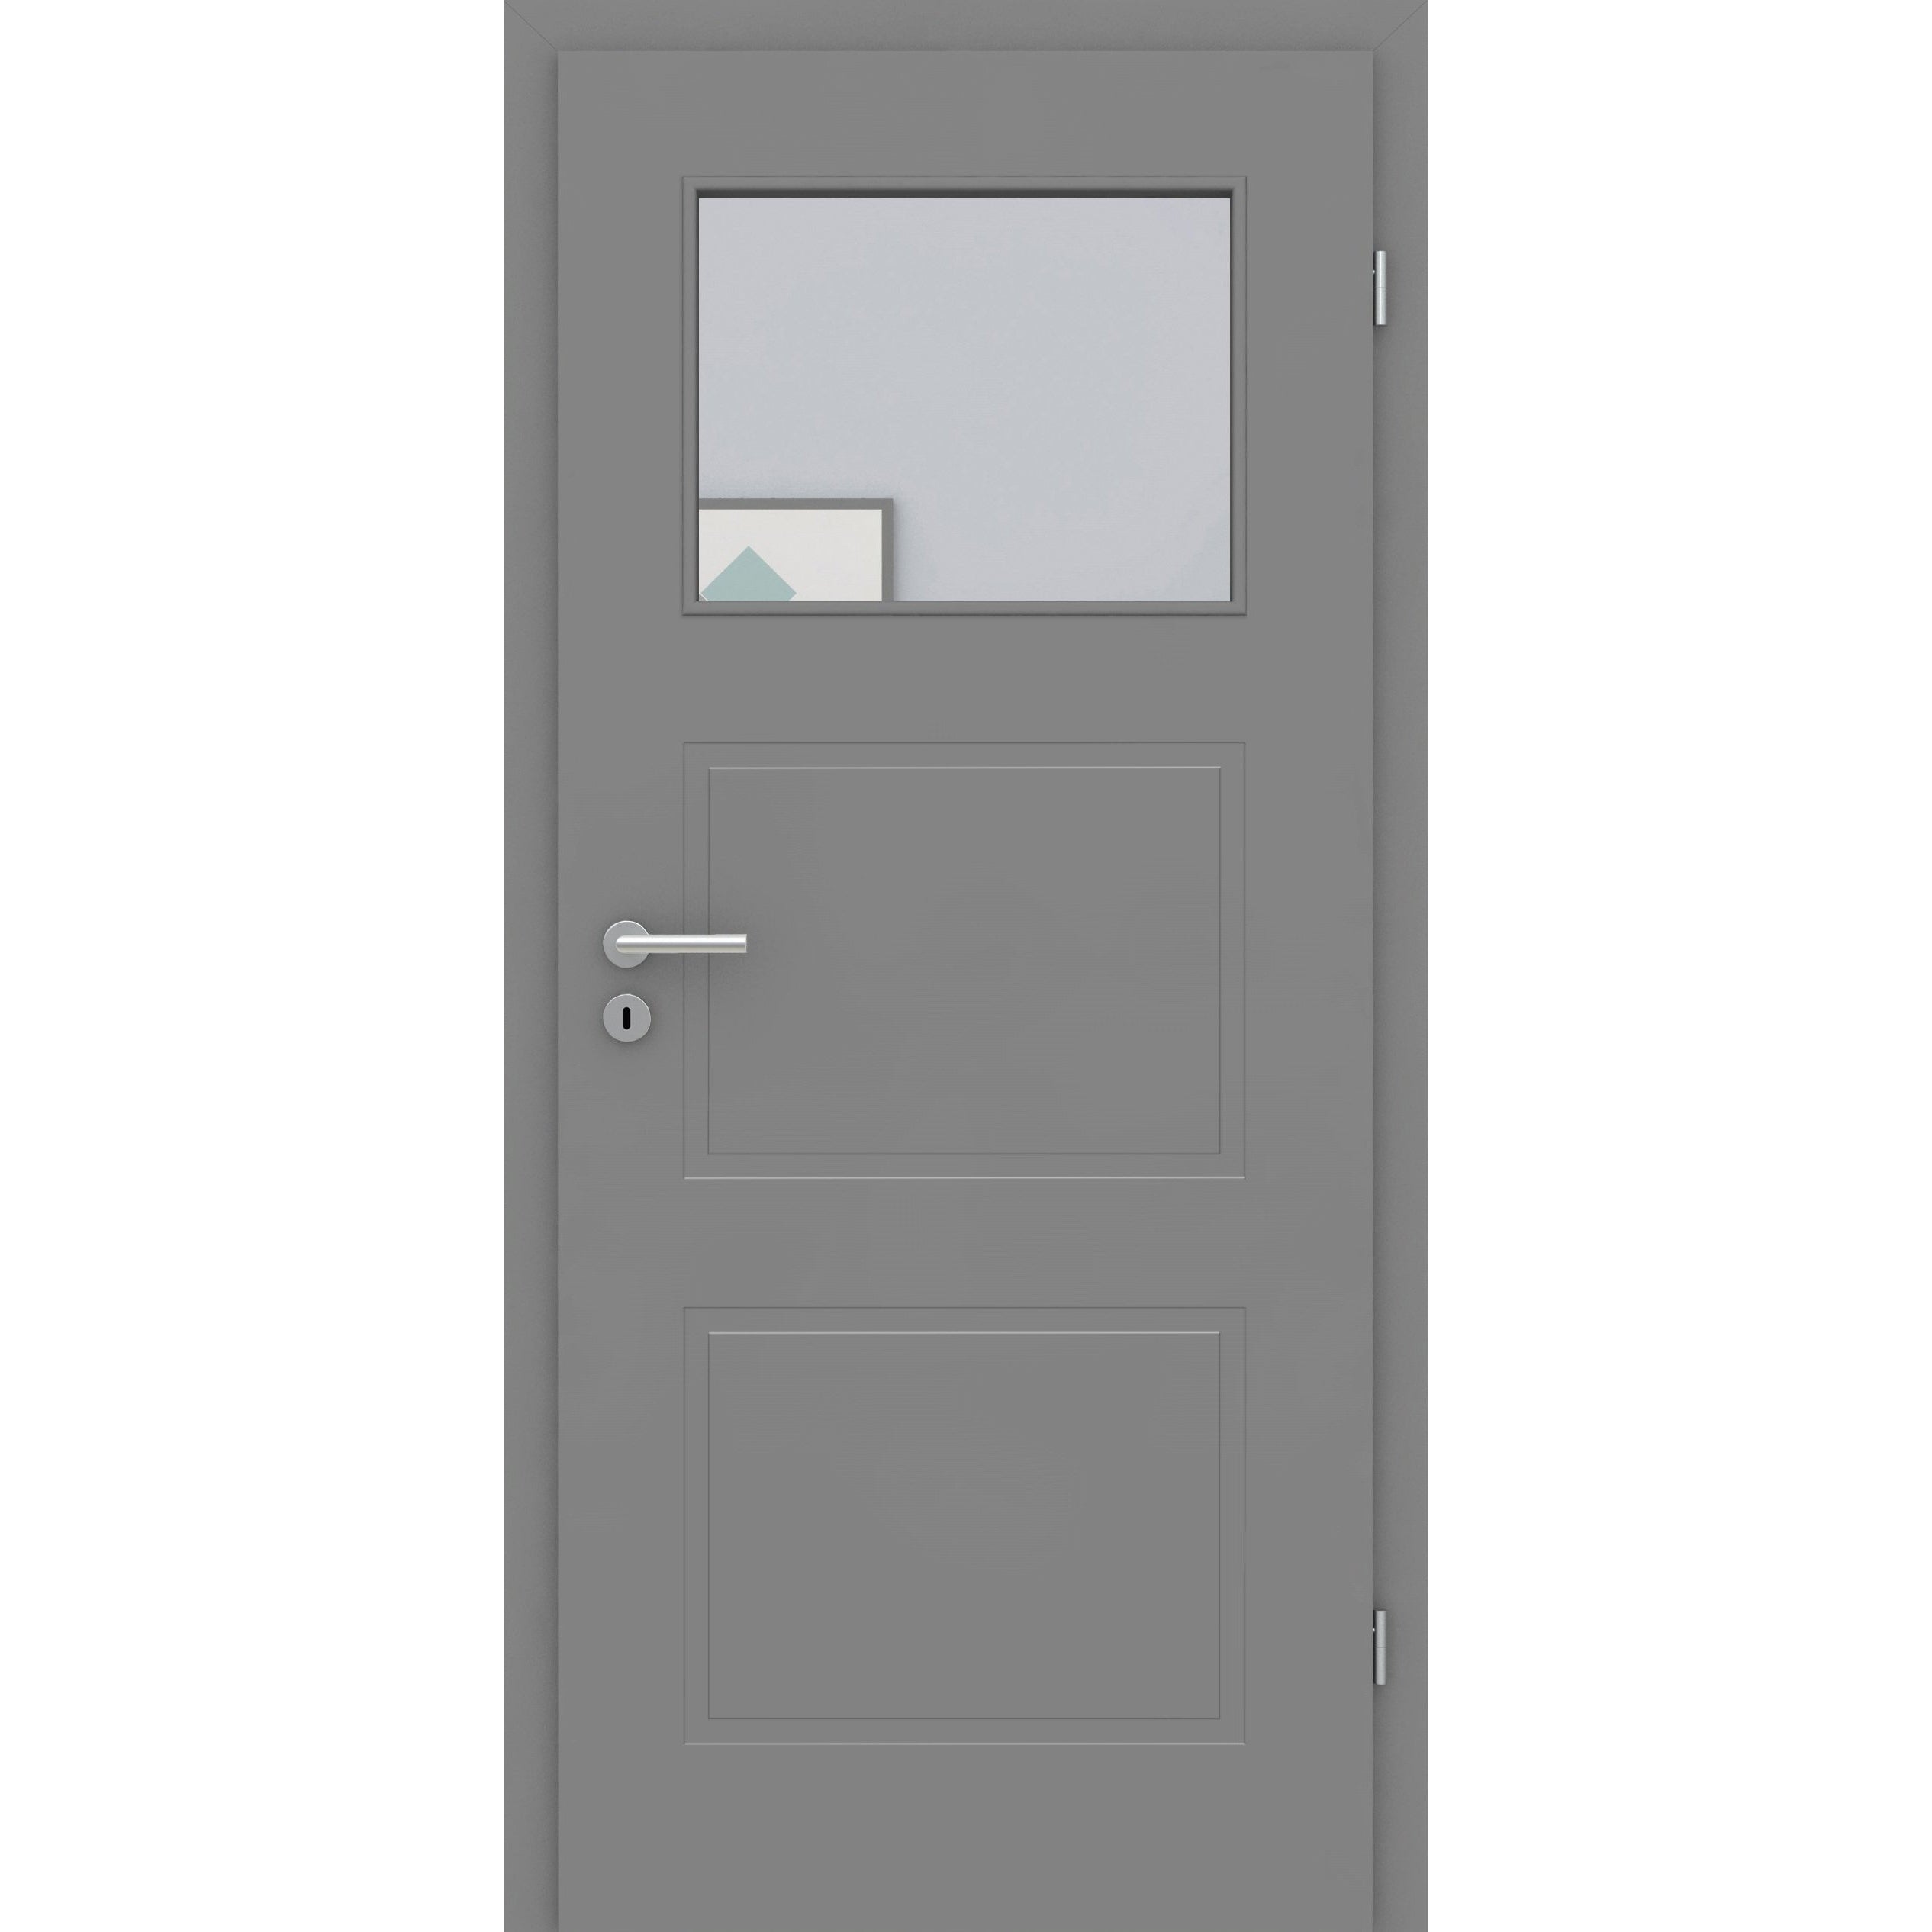 Zimmertür mit Lichtausschnitt grau 3 Kassetten Designkante - Modell Stiltür M37LA1